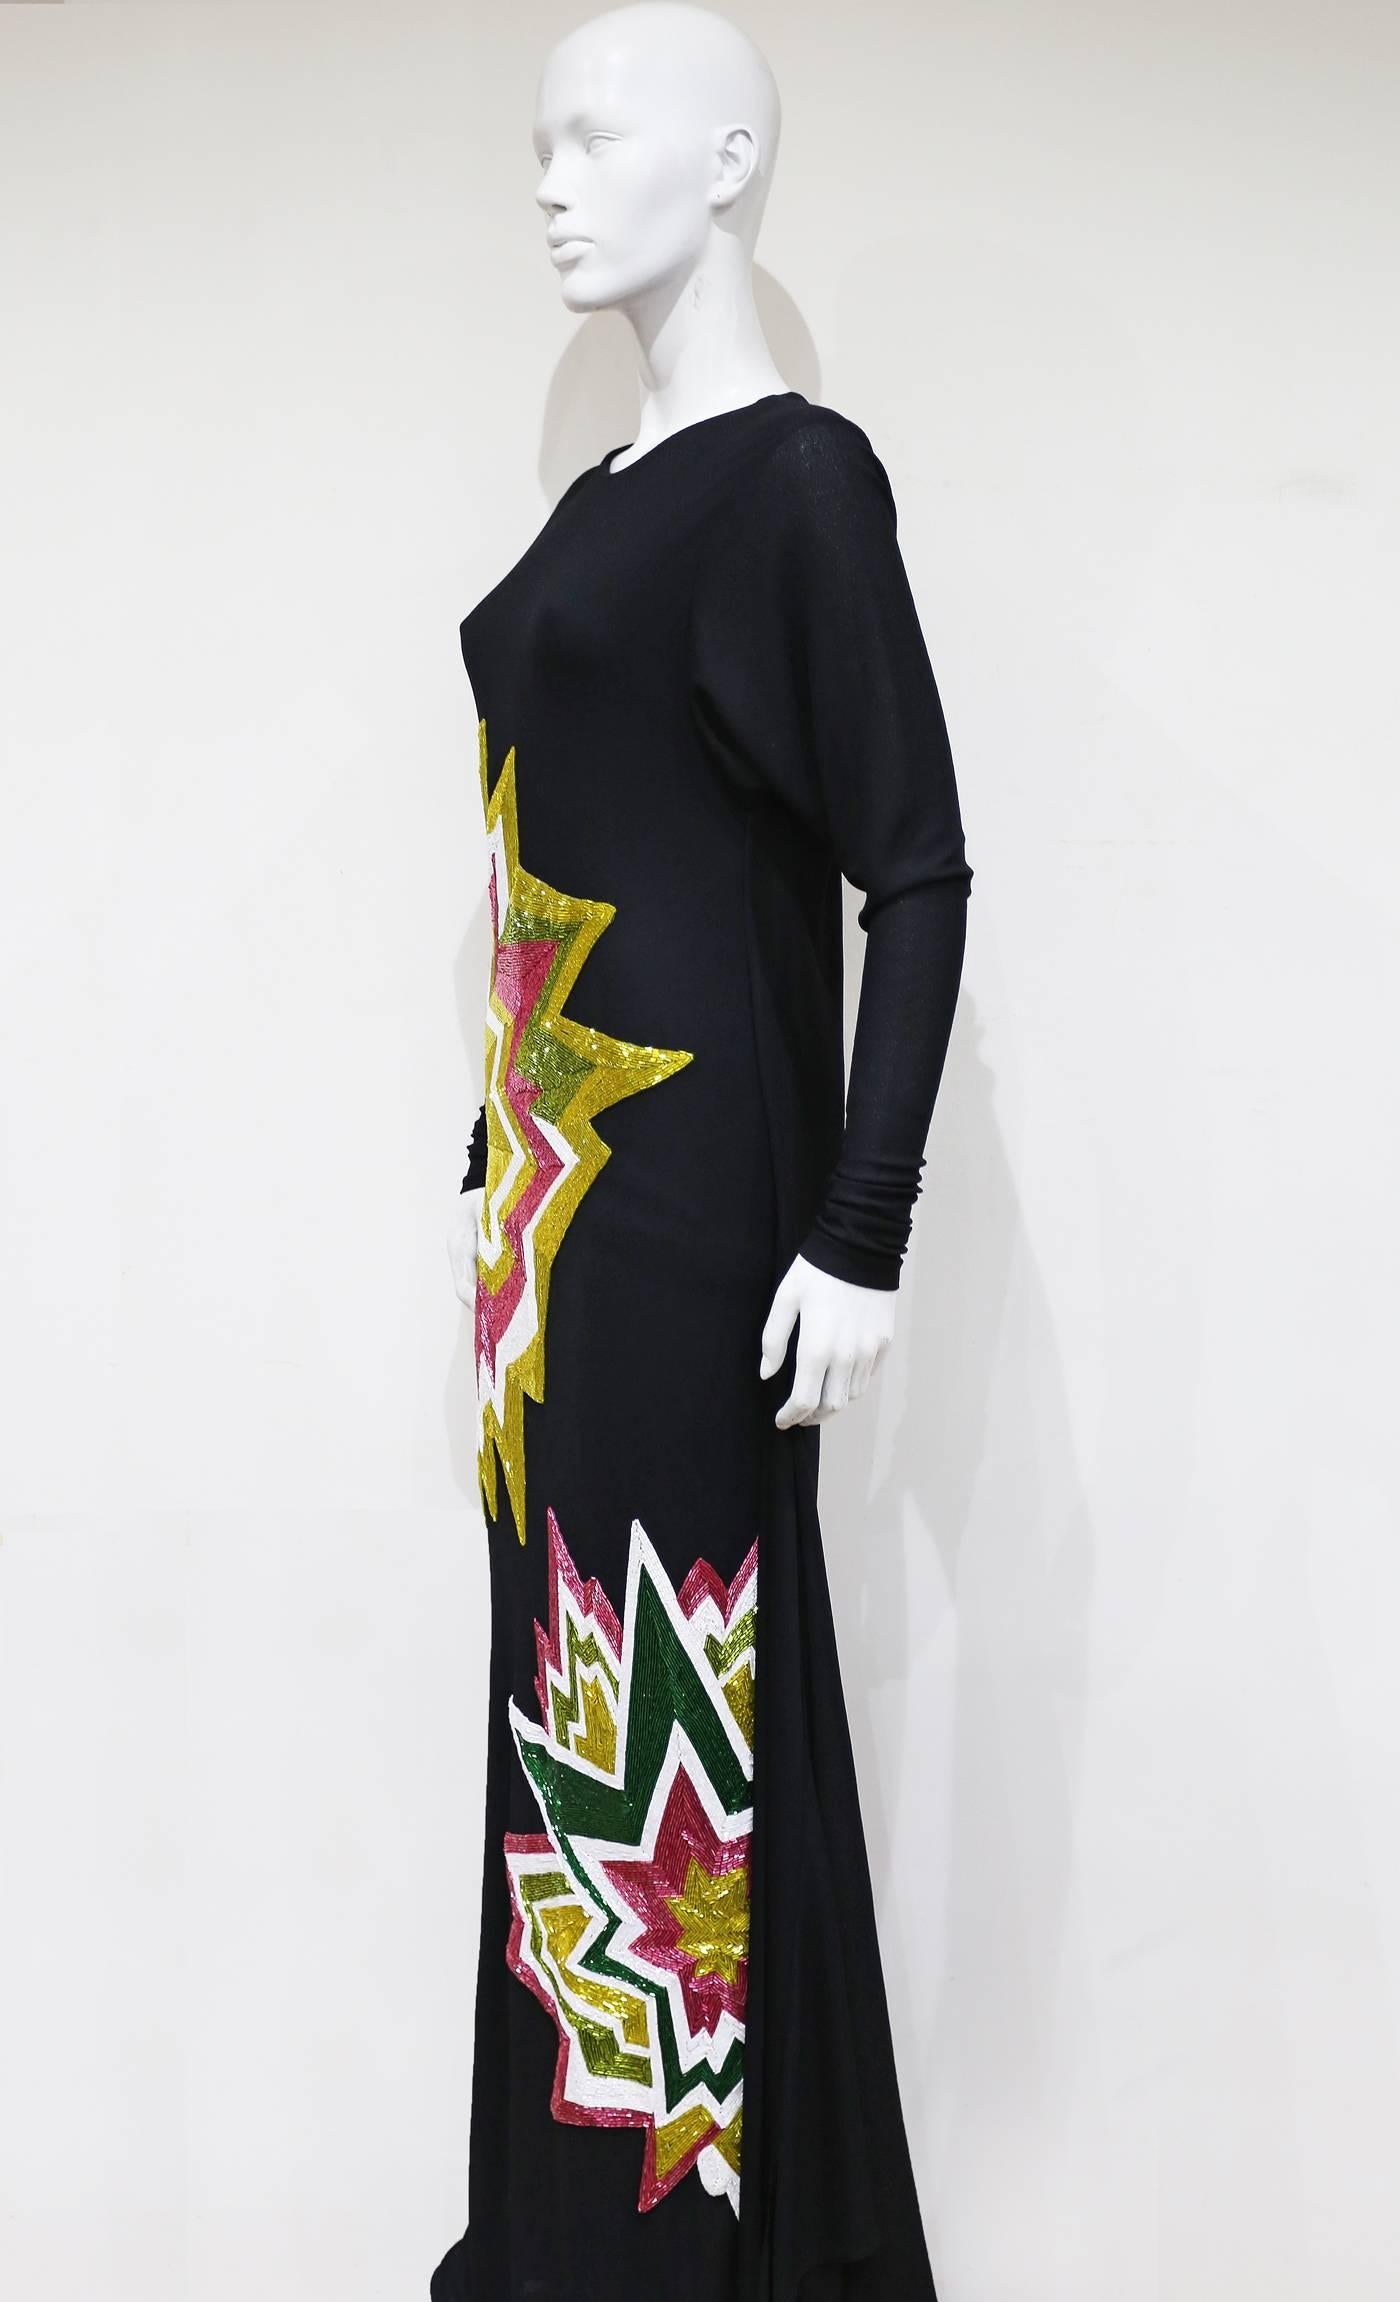 Tom Ford Embellished Pop Art Inspired Black Evening Dress, C. 2013 2